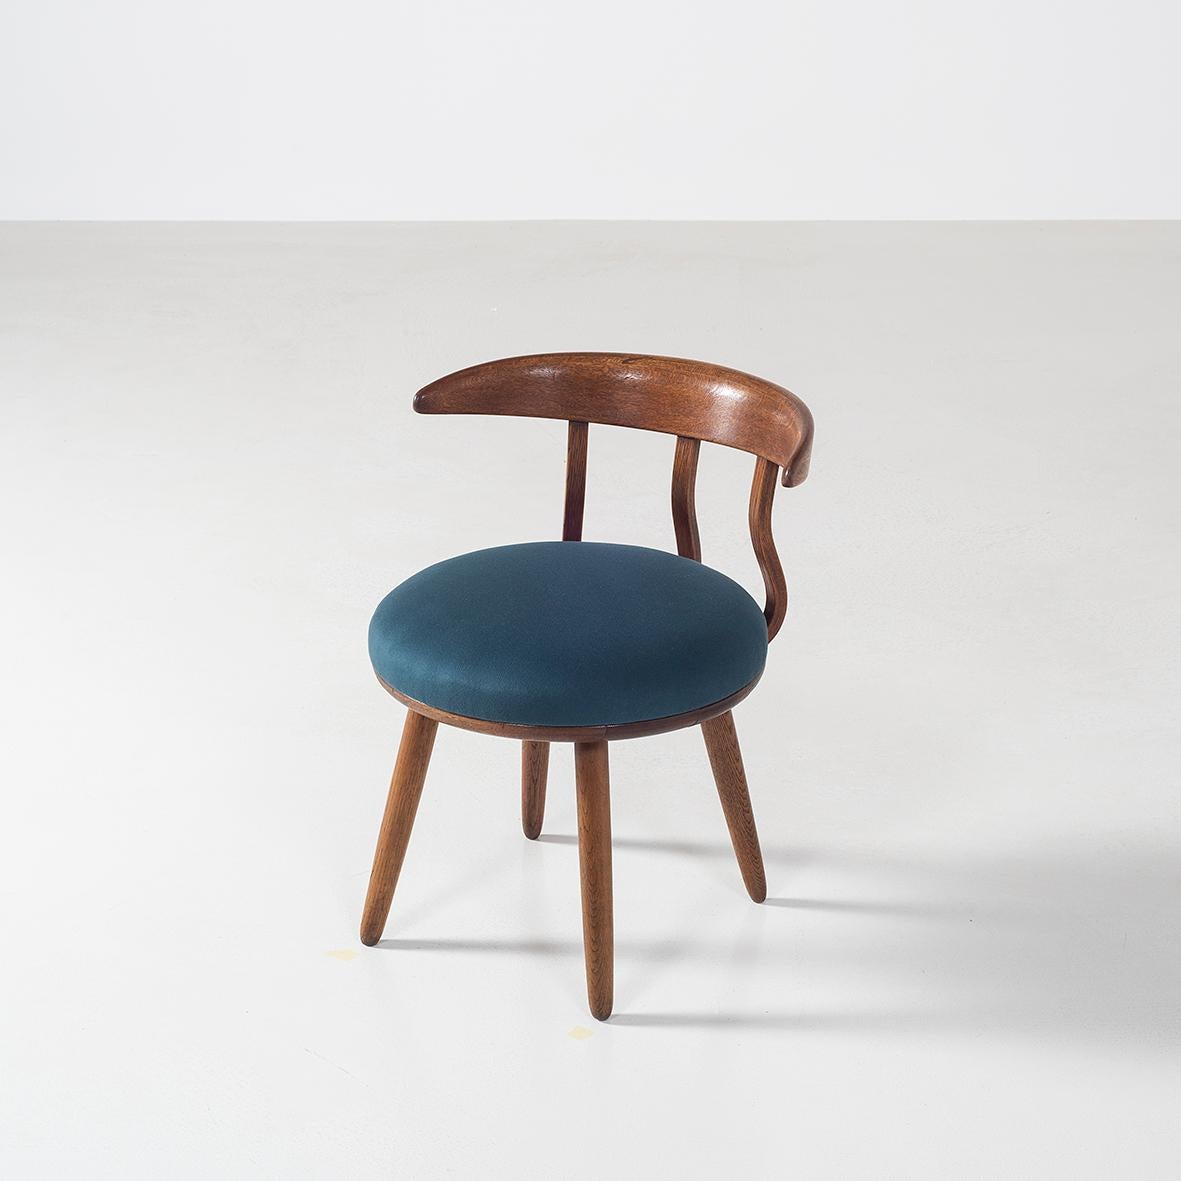 Dieses einzigartige Set aus 5 Stühlen wurde in den 1950er Jahren von Isamu Kenmochi entworfen.
Bei dieser Version des Stuhls könnte es sich um einen Prototyp des 1951 herausgegebenen Stuhls mit 5 Sprossen handeln, auf den in der